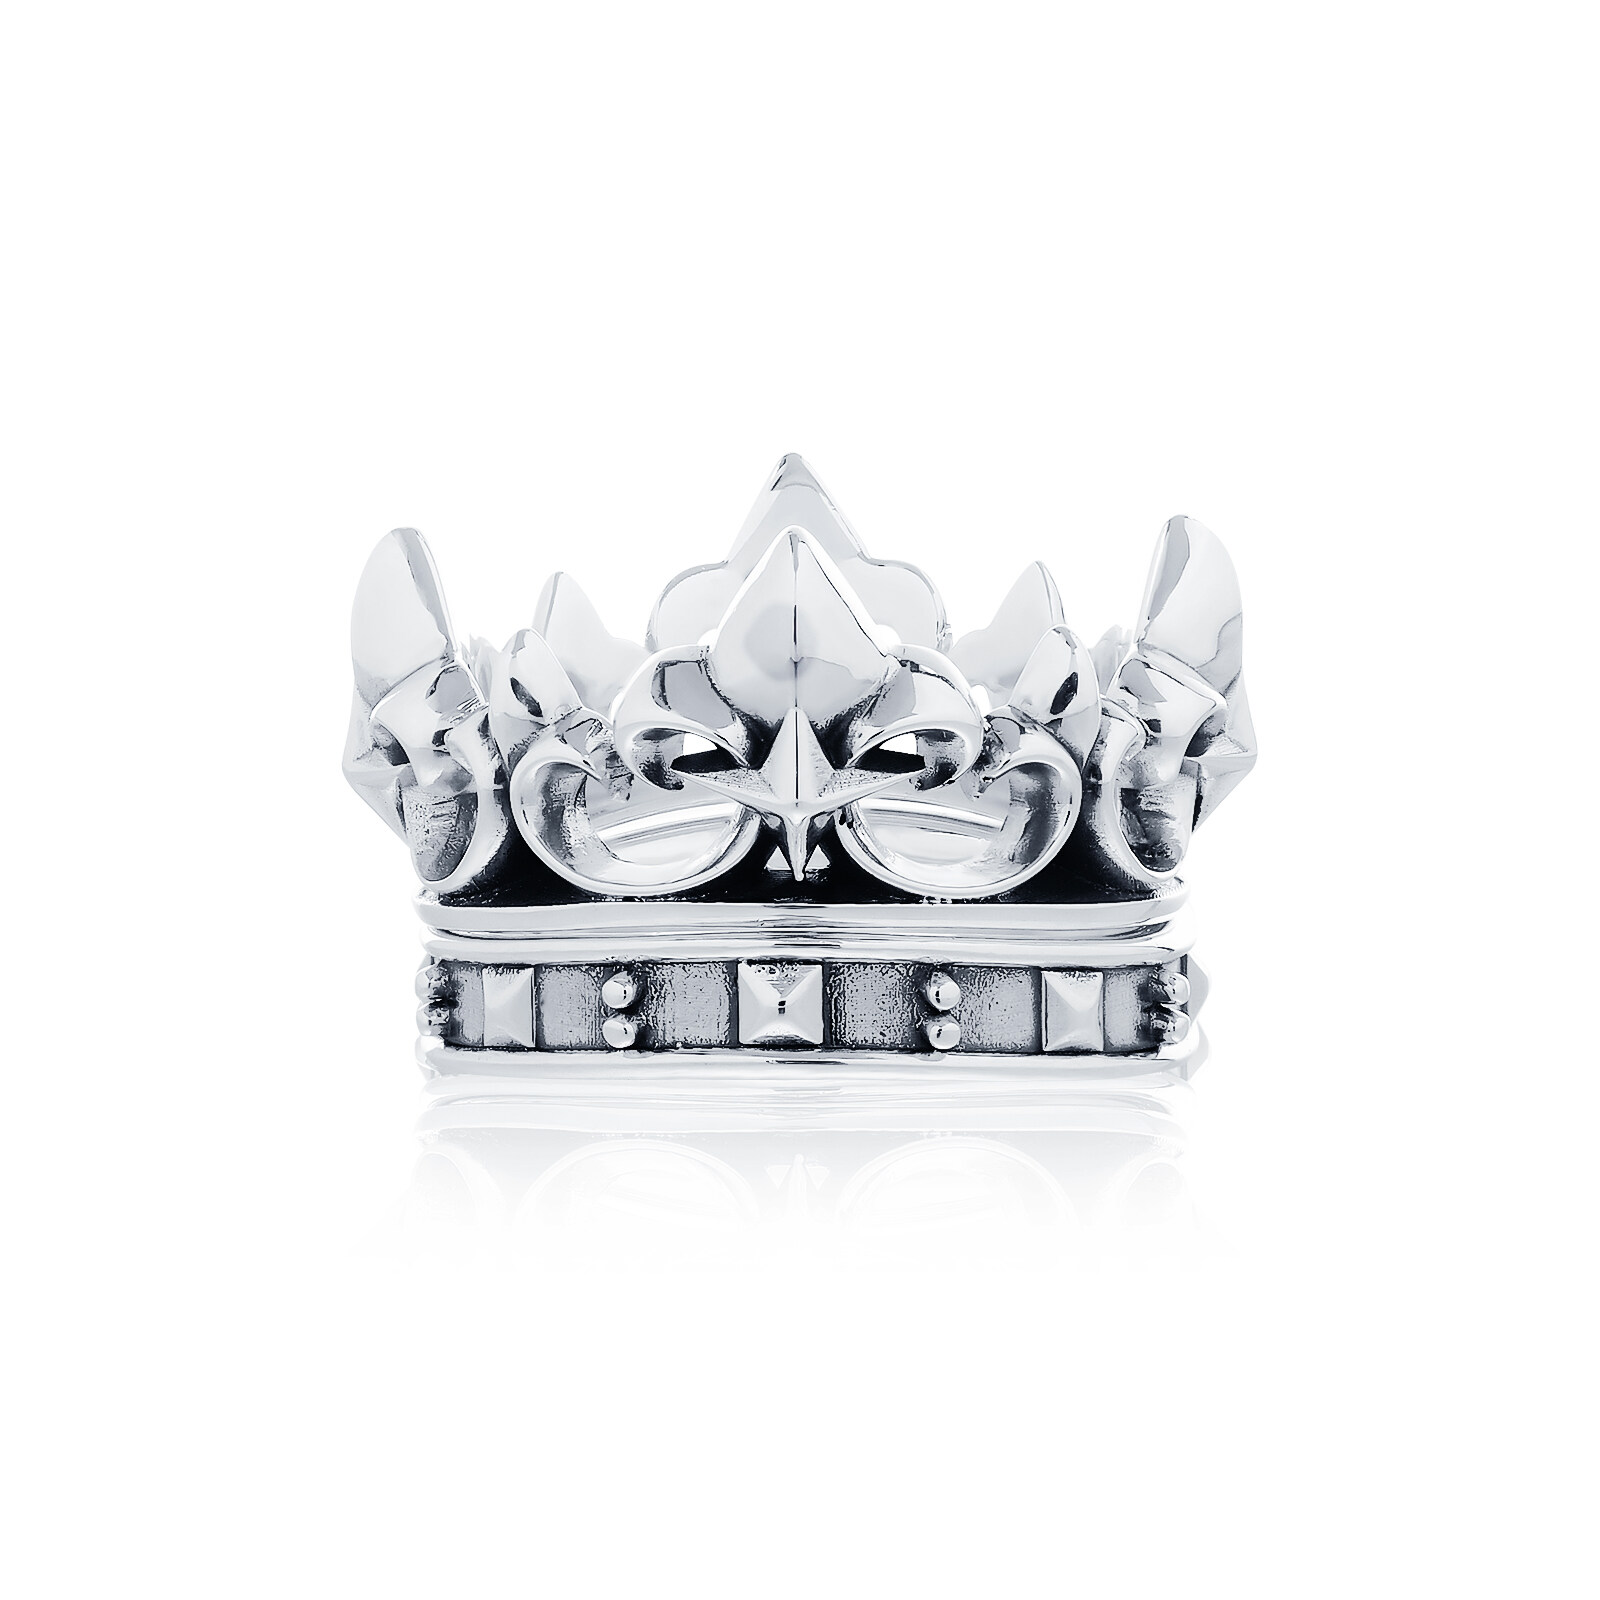 the Grand Westminster Crown ring แหวนเงินแท้ 925 แกะมือขัดเงาพิเศษ พร้อมลงดำขับลาย ลายมงกุฎ Westminster **แยกเป็นสองวง ใส่ซ้อนให้ลงล็อกกันหรือแยกใส่ได้ **